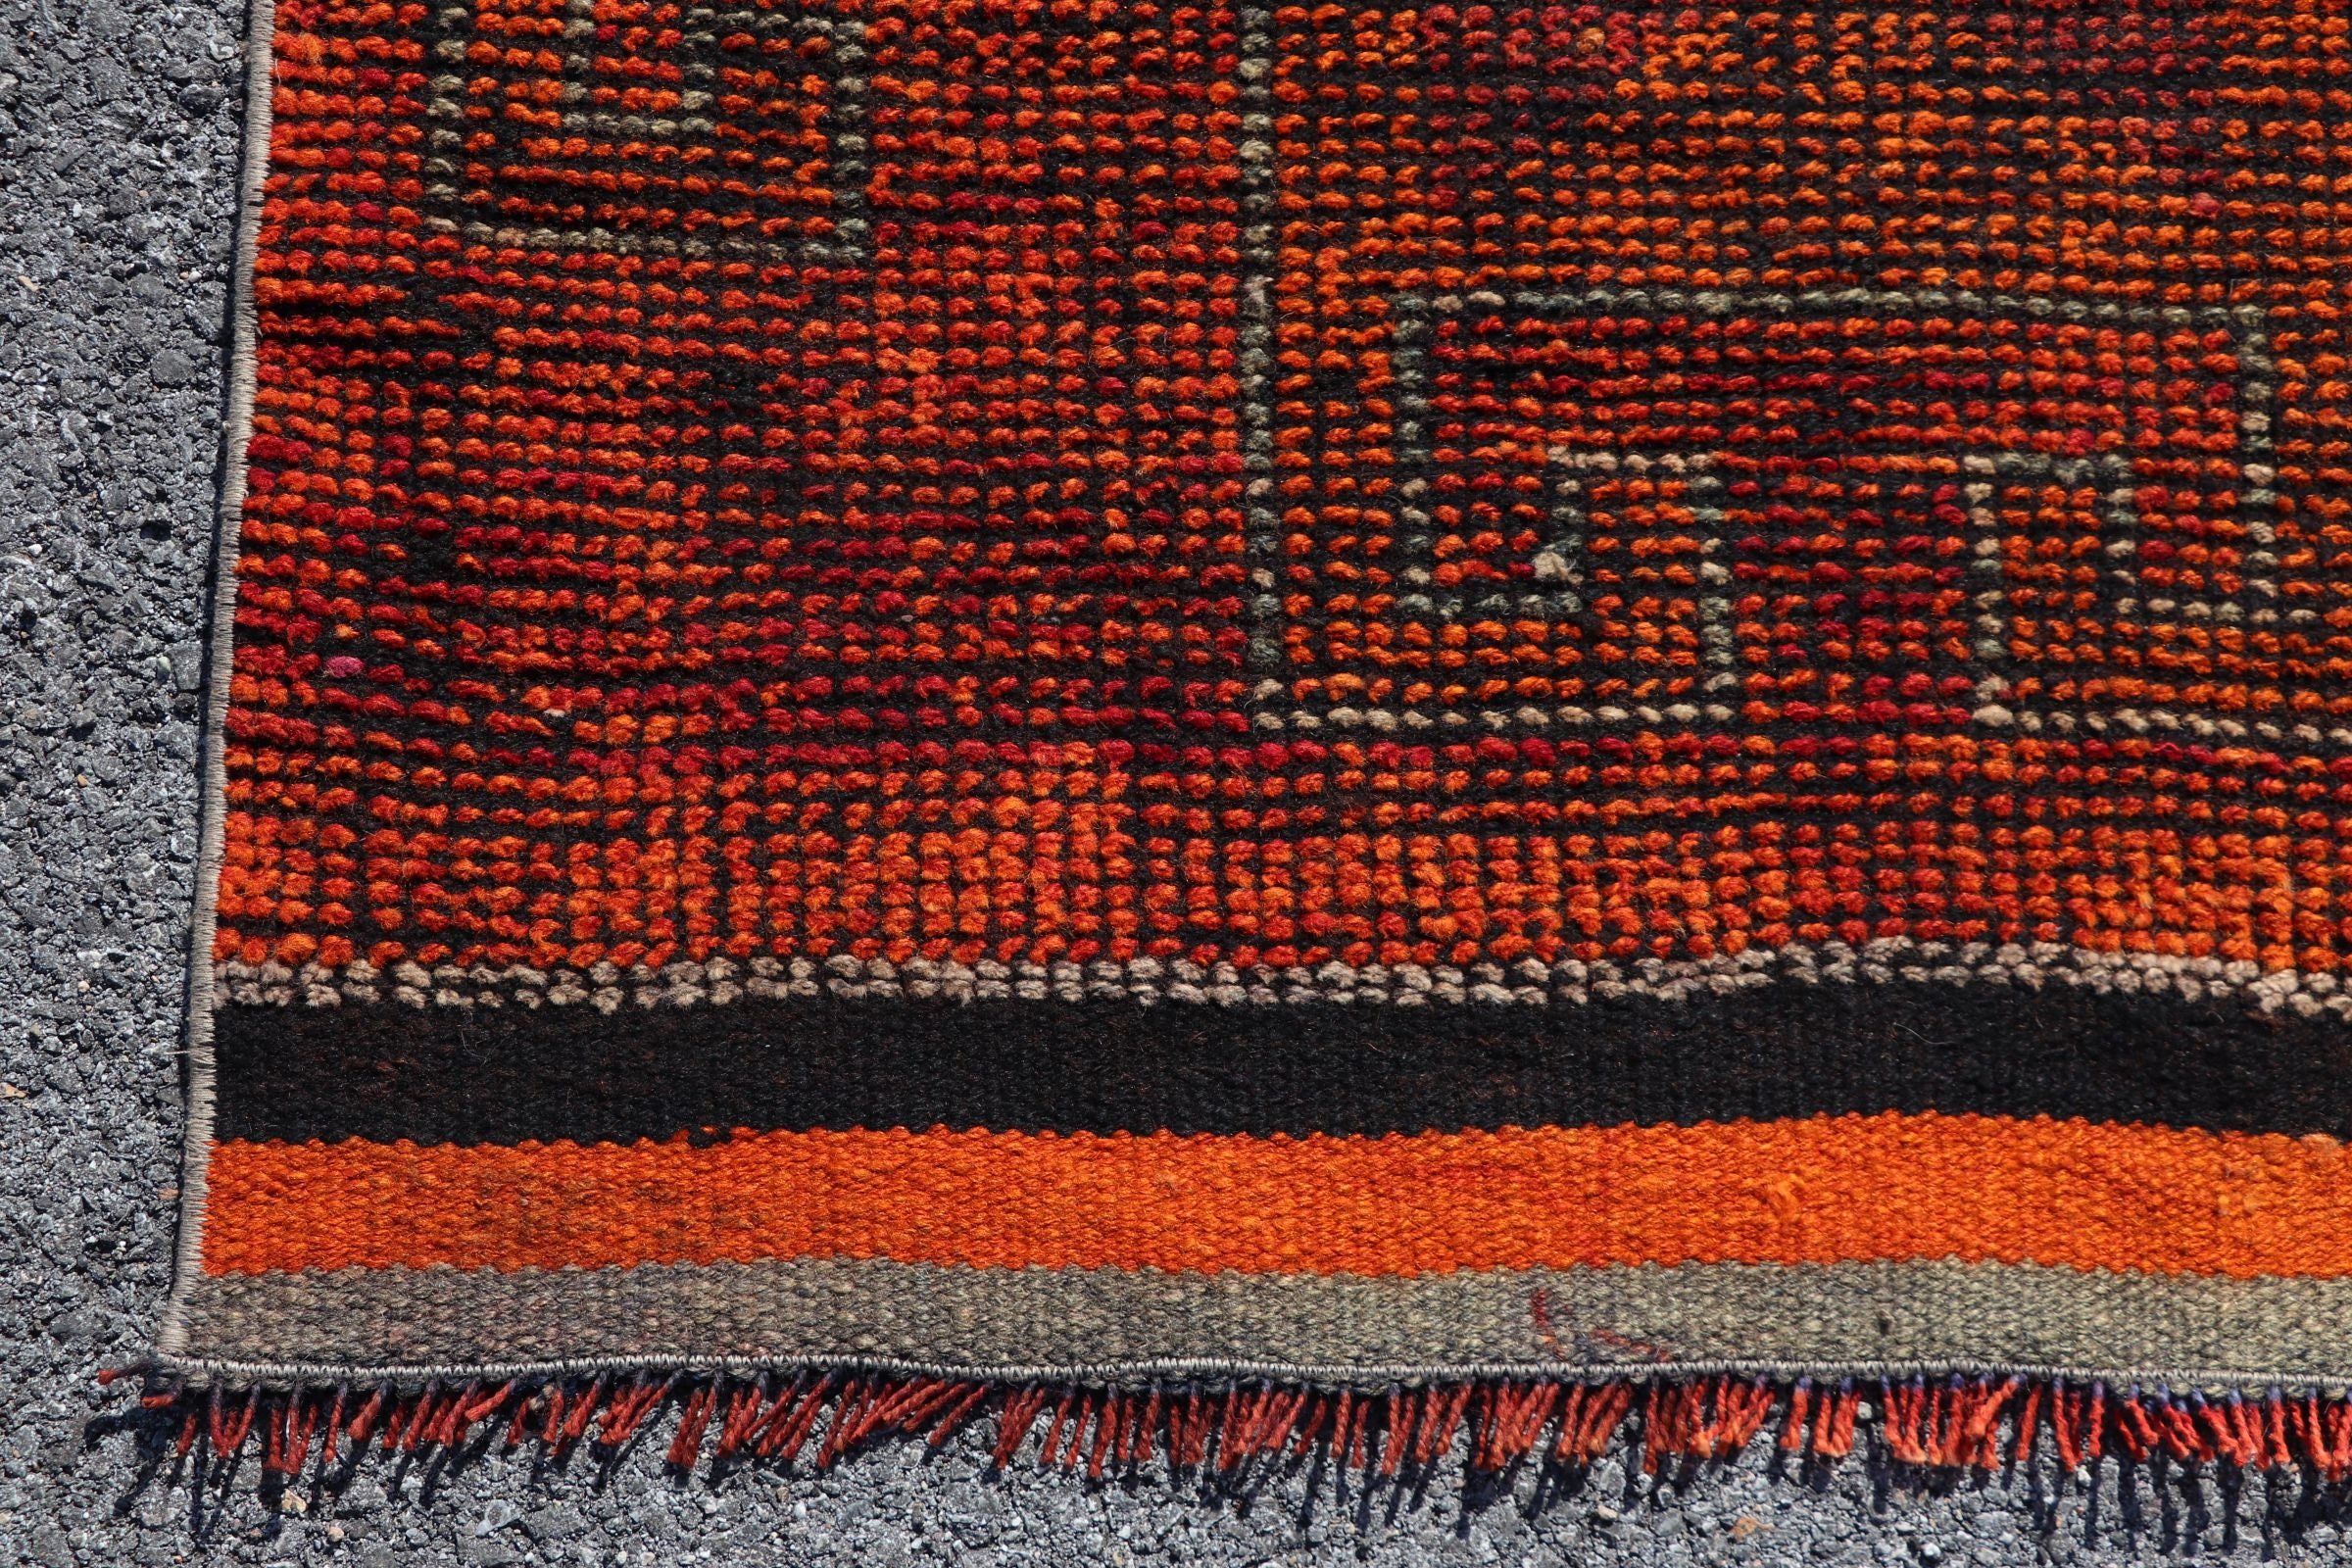 Oushak Rug, Hallway Rugs, Turkish Rugs, Vintage Rug, Moroccan Rug, Cute Rugs, Kitchen Rugs, 3.1x11.2 ft Runner Rug, Orange Antique Rugs